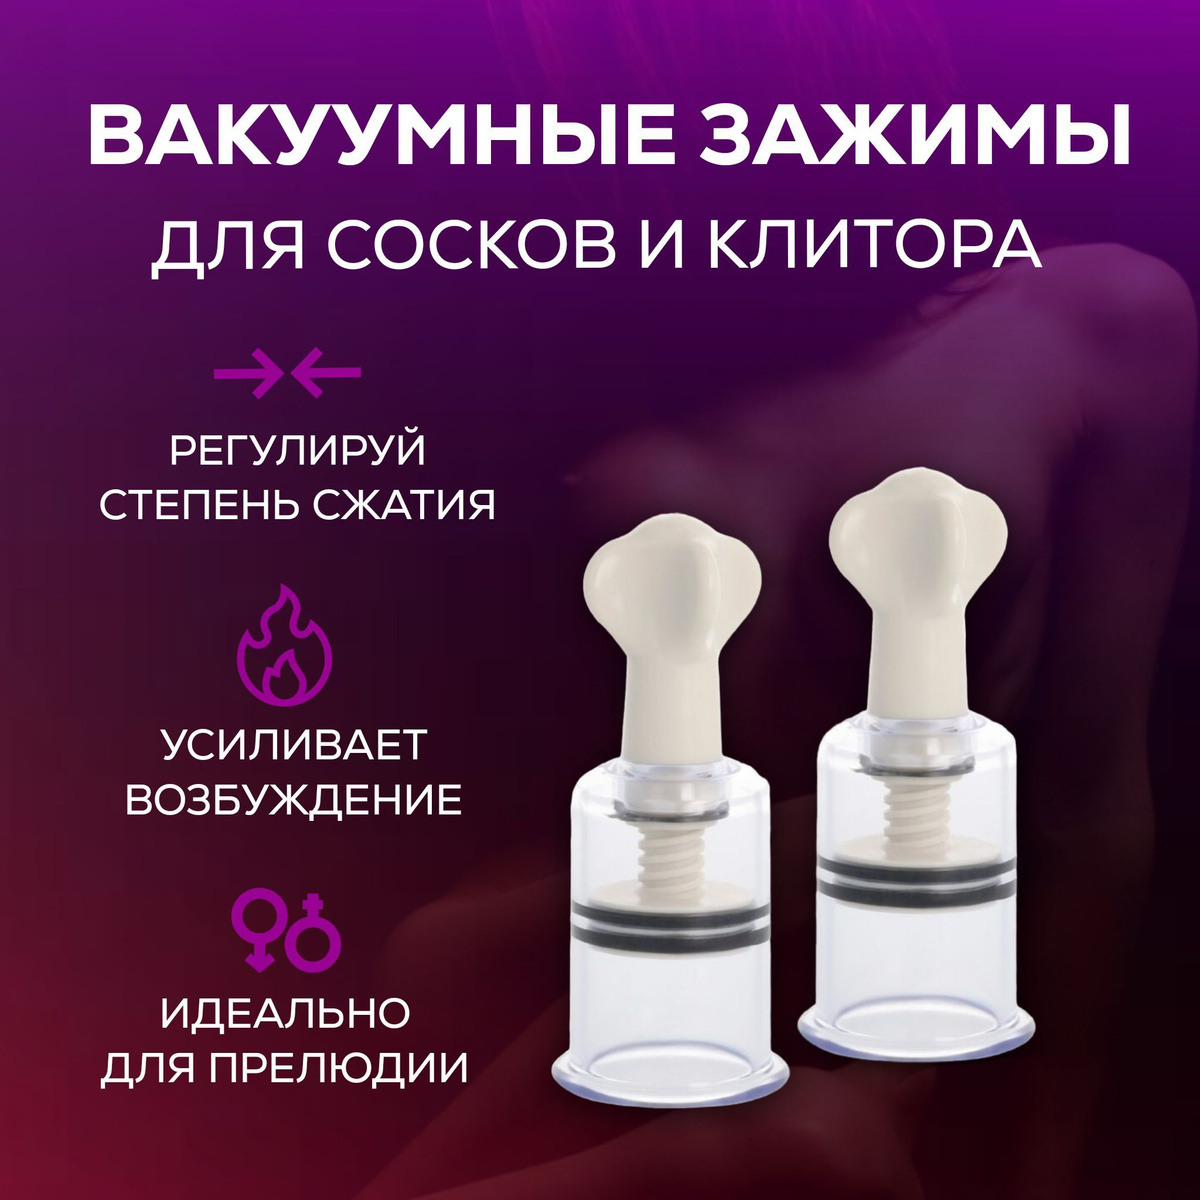 Вакуум для сосков и клитора может использоваться как самостоятельный инструмент для достижения оргазма